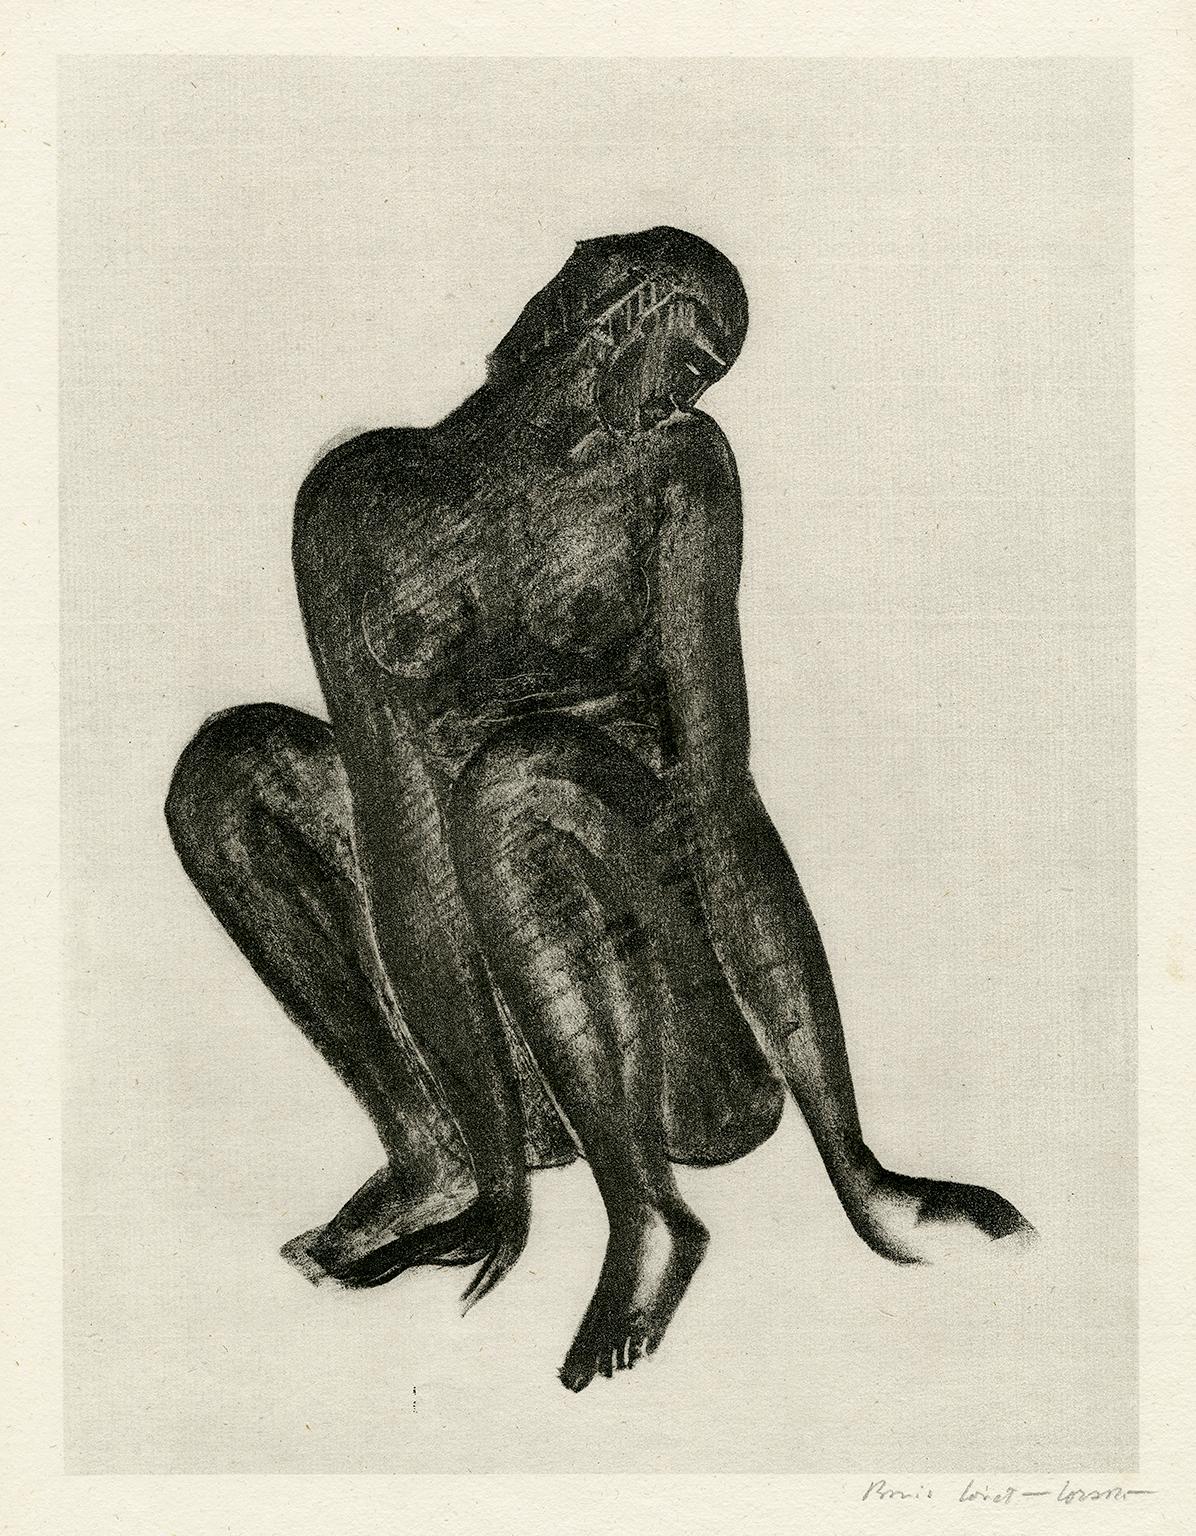 Boris Lovet-Lorski Nude Print – Ohne Titel (Schwarze Frau schlägt)